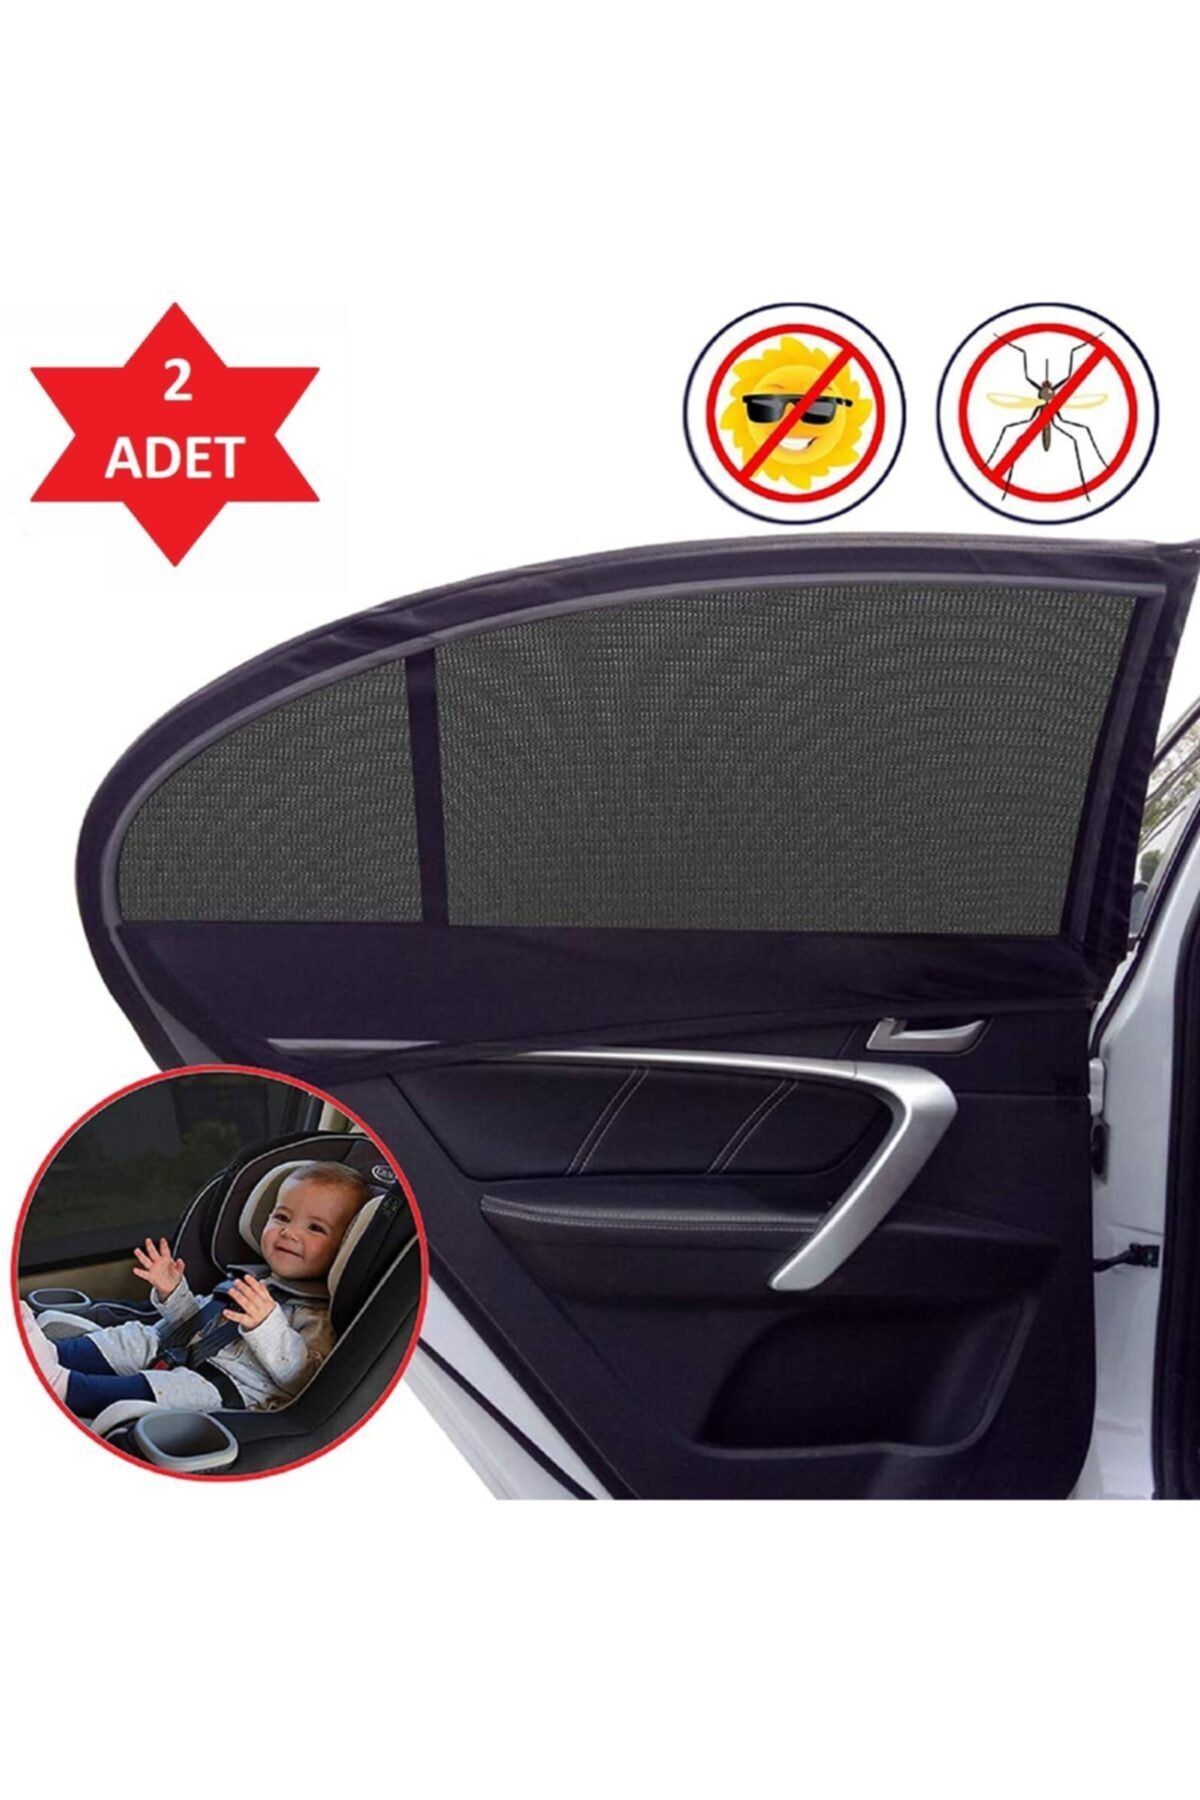 Ankaflex 2 Adet Araba Yan Pencere Güneşlik Bebek Için Araç Perde Oto Makam Seyahat Perdesi Cibinlik